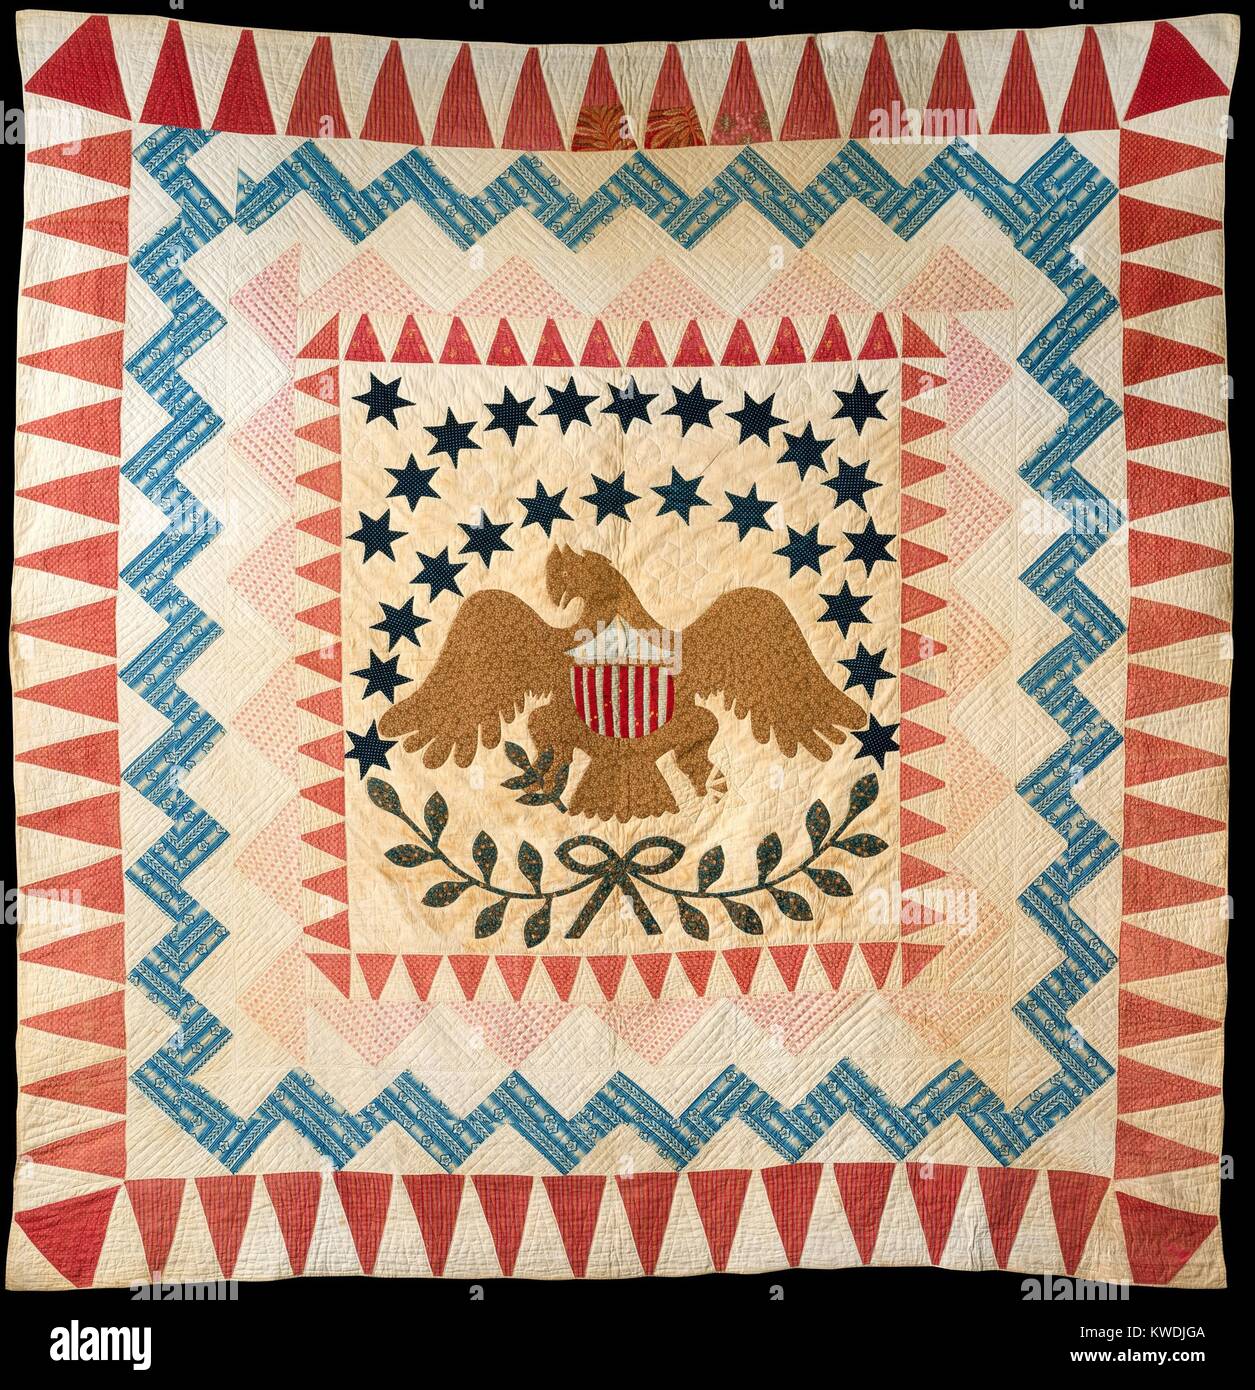 QUILT, EAGLE PATRÓN, 1837-50, Nueva Inglaterra, American Crafts, textiles de algodón. La colcha es fechado por su impreso algodones que datan desde los 1830s y 1840s. Además, el vigésimo sexta estrella por encima de la cabeza de águila, pueden celebrar Michigans la admisión a la Unión en 1837 (BSLOC 2017 16 123) Foto de stock